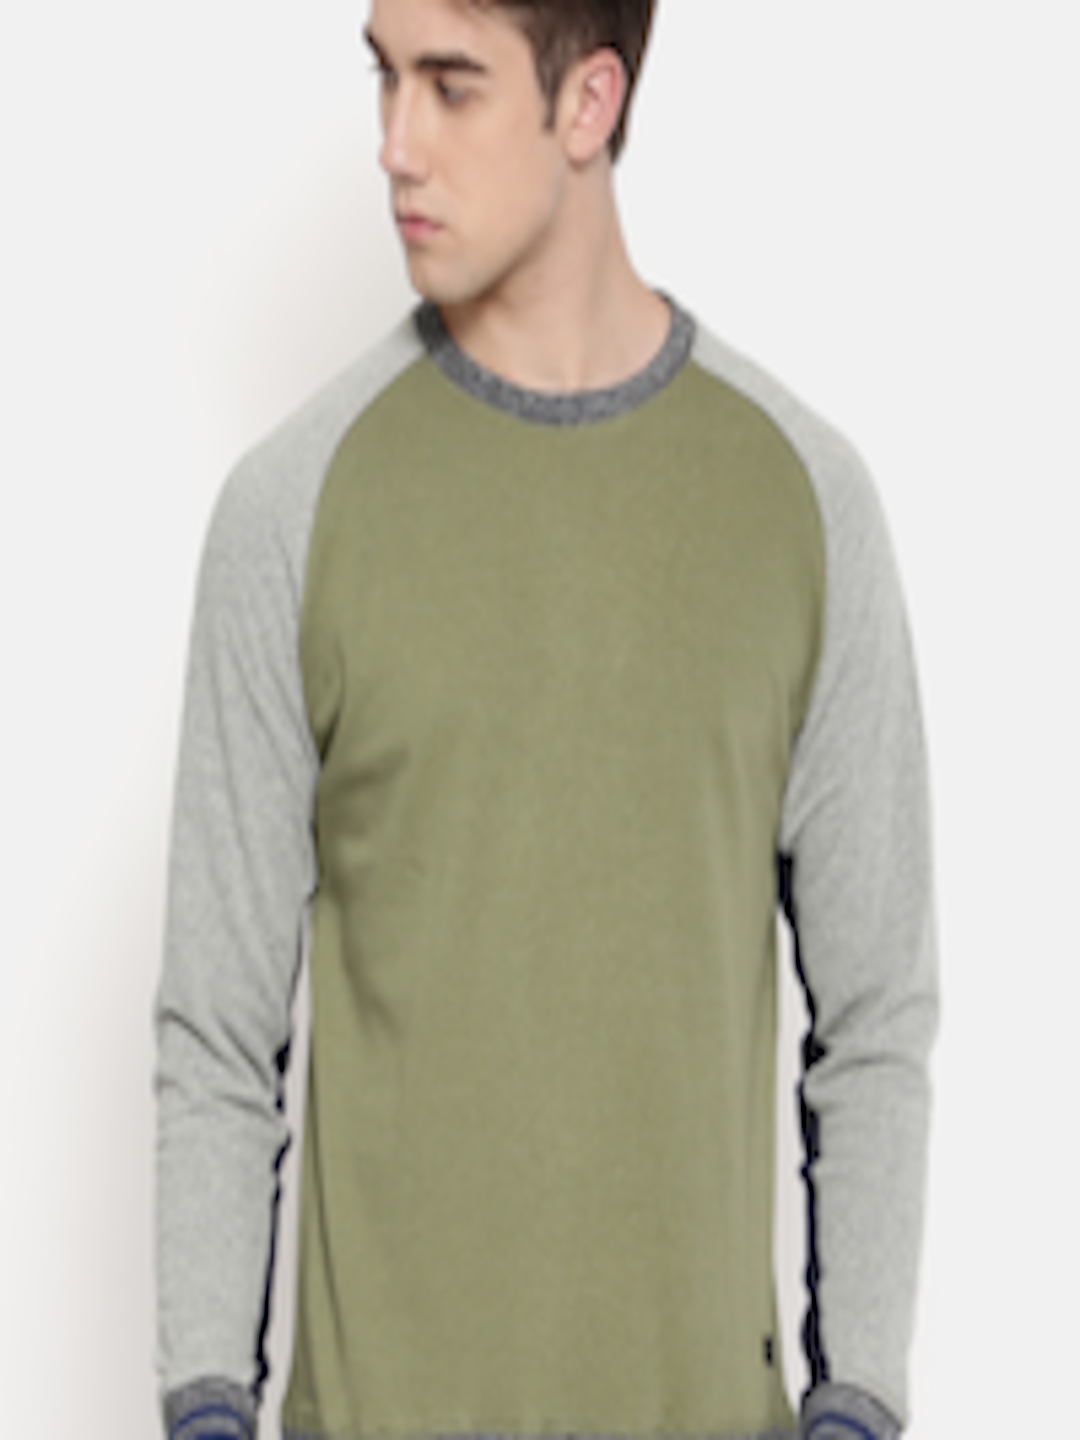 Buy Pepe Jeans Men Olive Green Solid Sweatshirt - Sweatshirts for Men ...